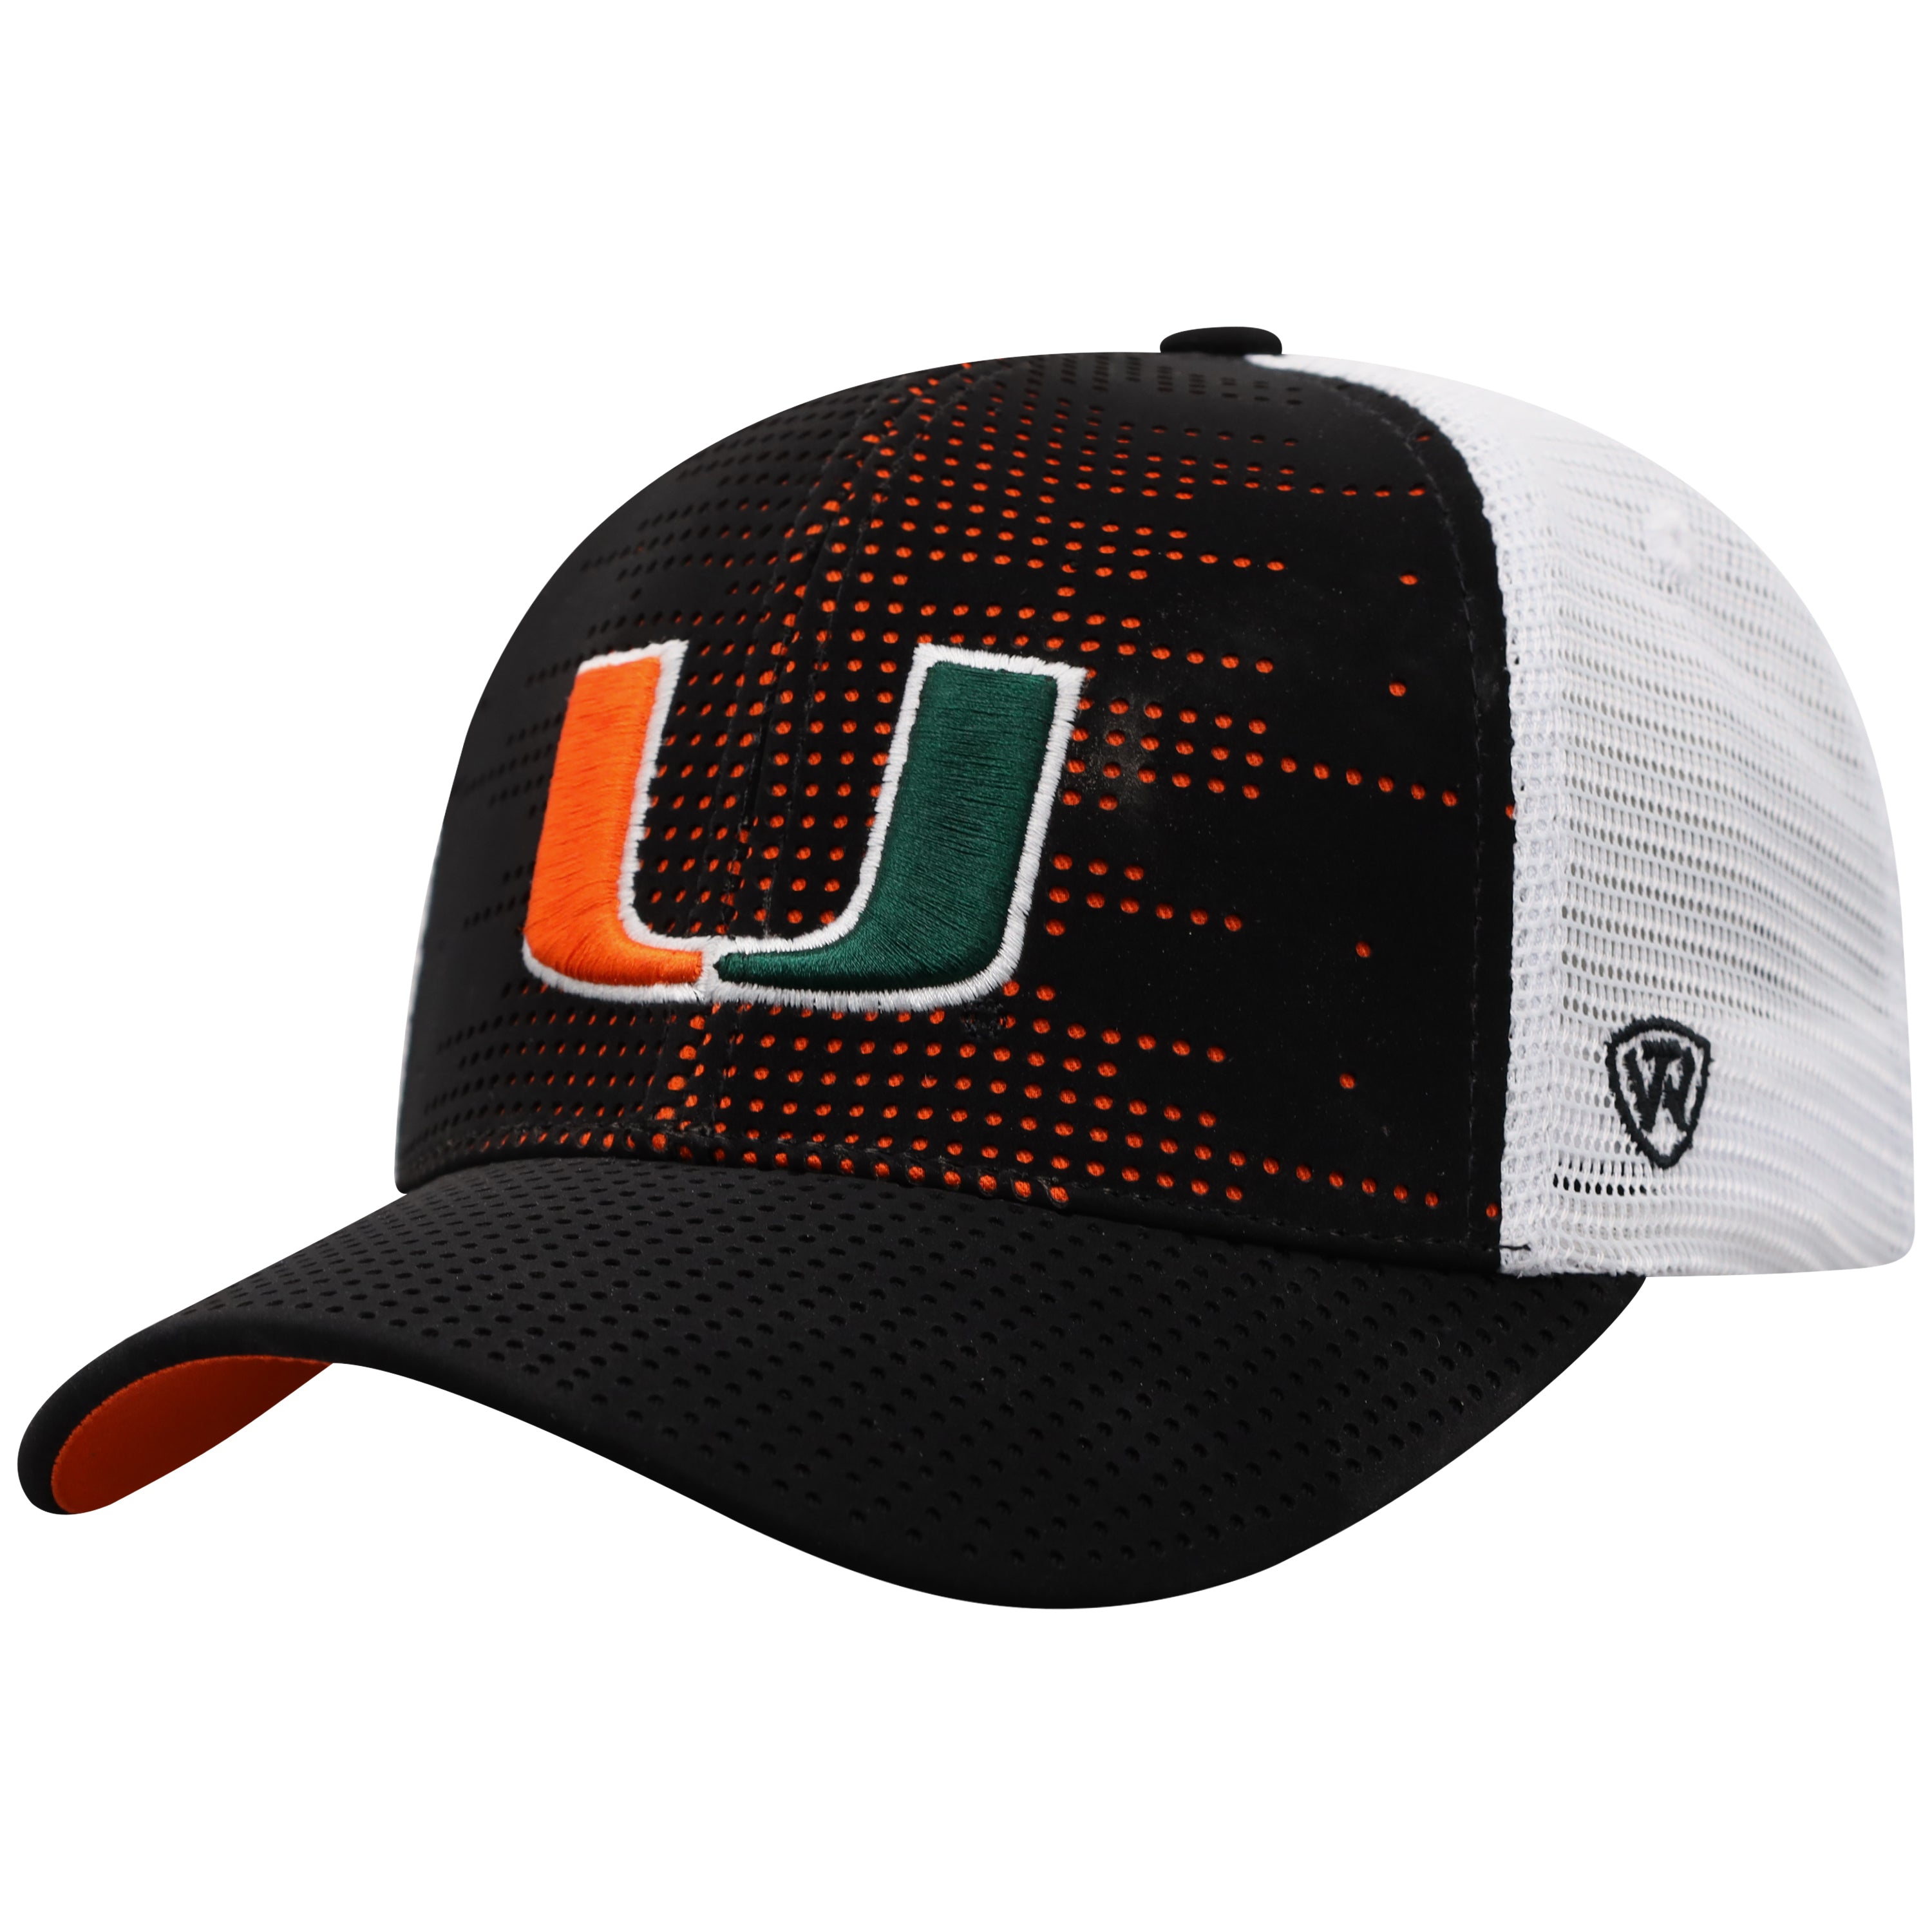  NBA Miami Heat Black Tonal Flex Fit Hat : Sports Fan Baseball  Caps : Sports & Outdoors